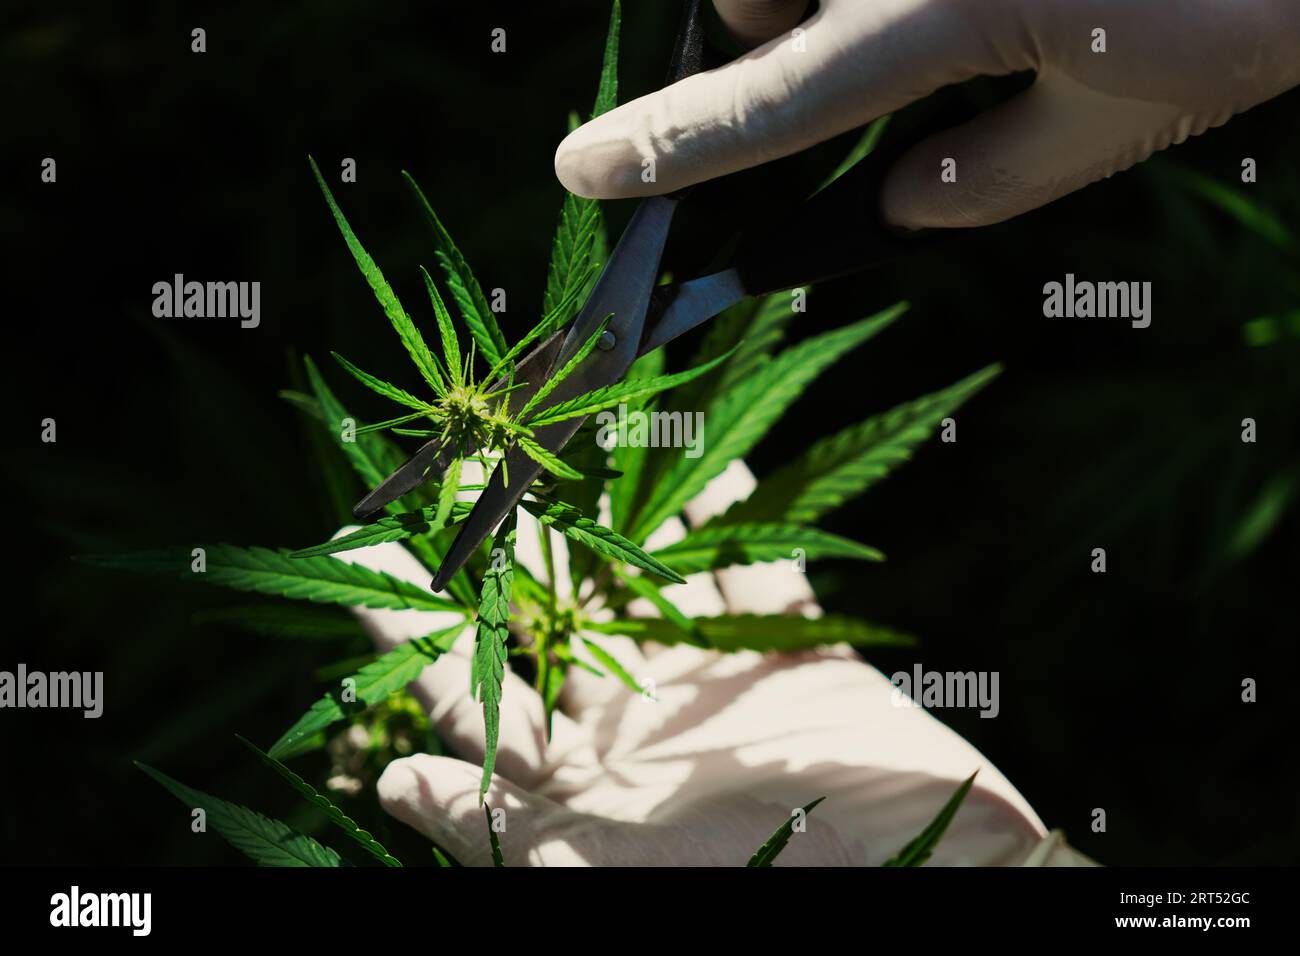 Main de scientifique avec un gant en caoutchouc médical touchant la feuille de cannabis gratifiante dans une ferme de cannabis curative intérieure. Traitement médical alternatif par le cannabis Banque D'Images